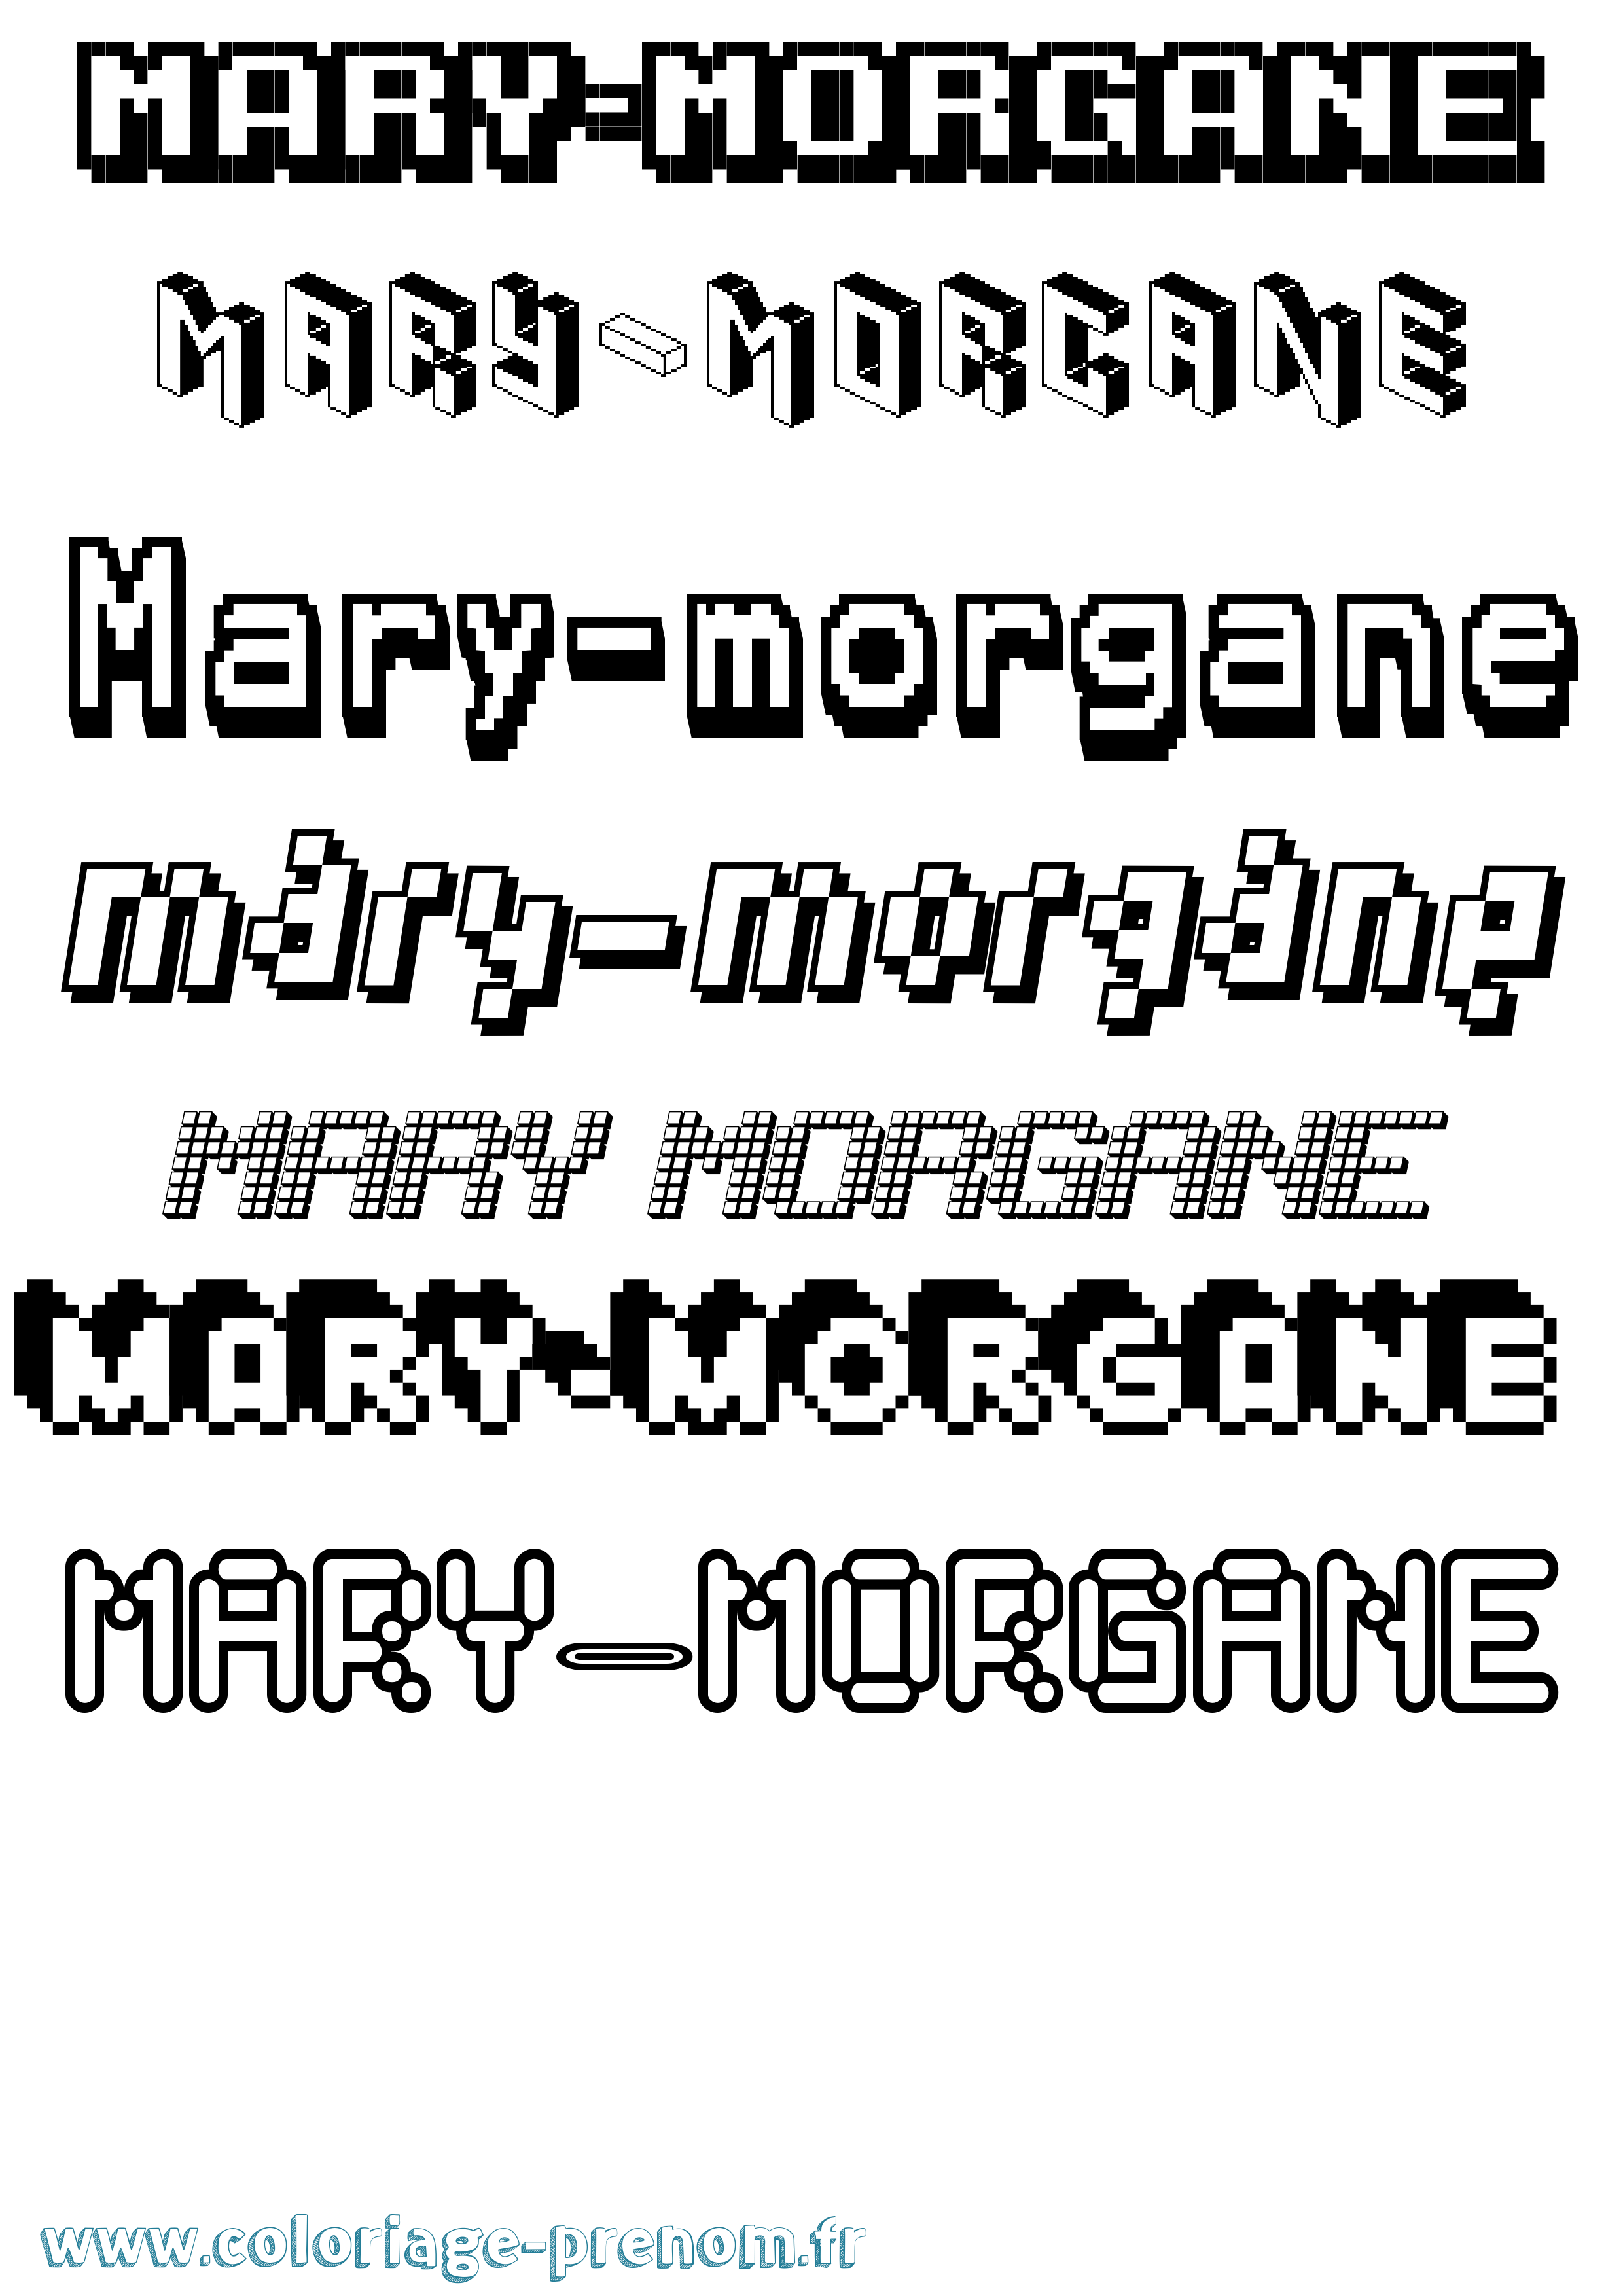 Coloriage prénom Mary-Morgane Pixel